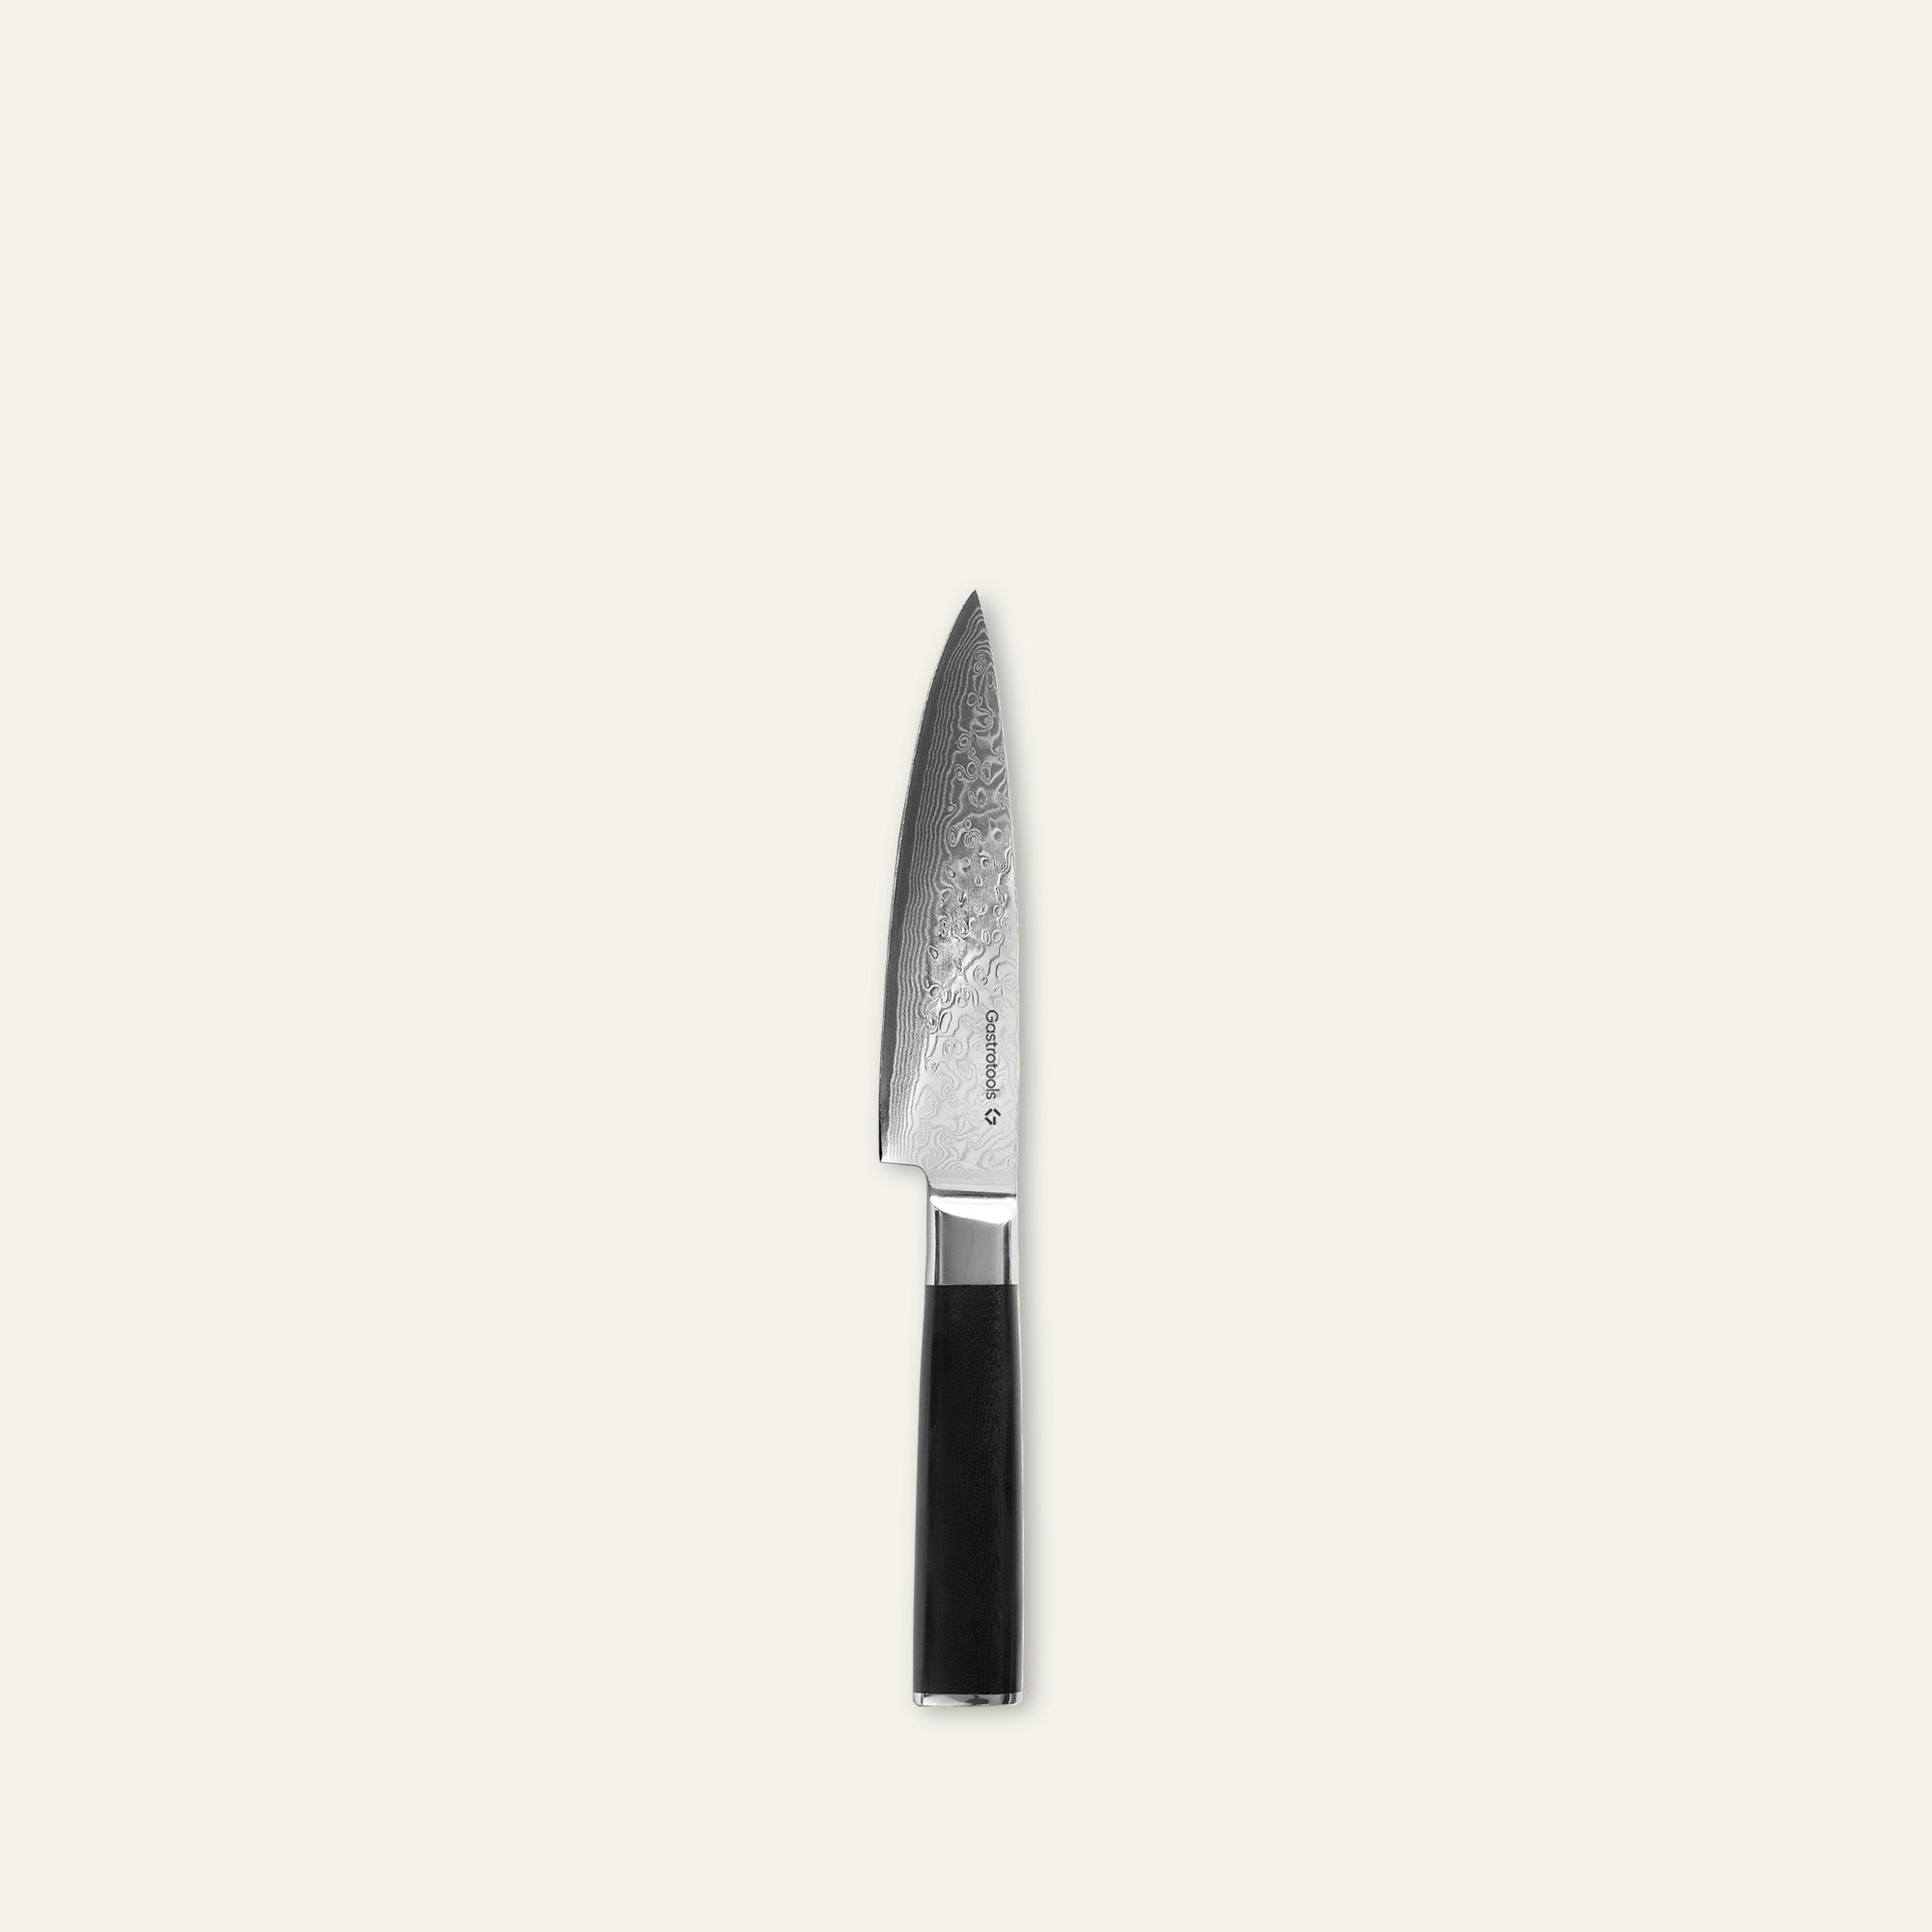 Billede af Gastrotools Kokkekniv - Japansk Damaskus Stål - 15 cm - 67 Lag - VG10 Kerne - Sort